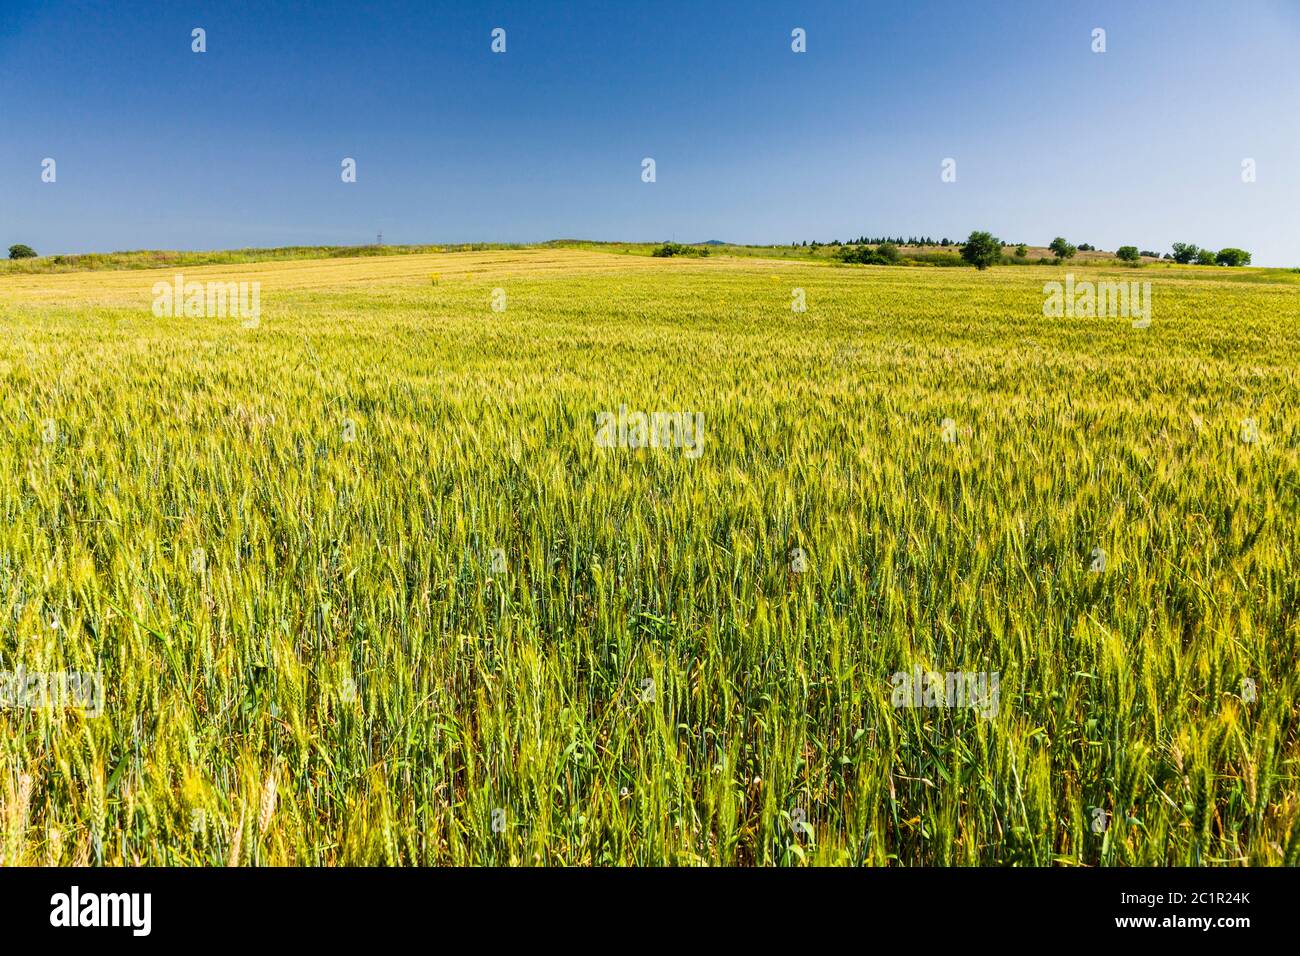 Paesaggio della regione della Macedonia, campi di grano della regione della Macedonia, sobborgo di Serres, Macedonia centrale, Grecia, Europa Foto Stock